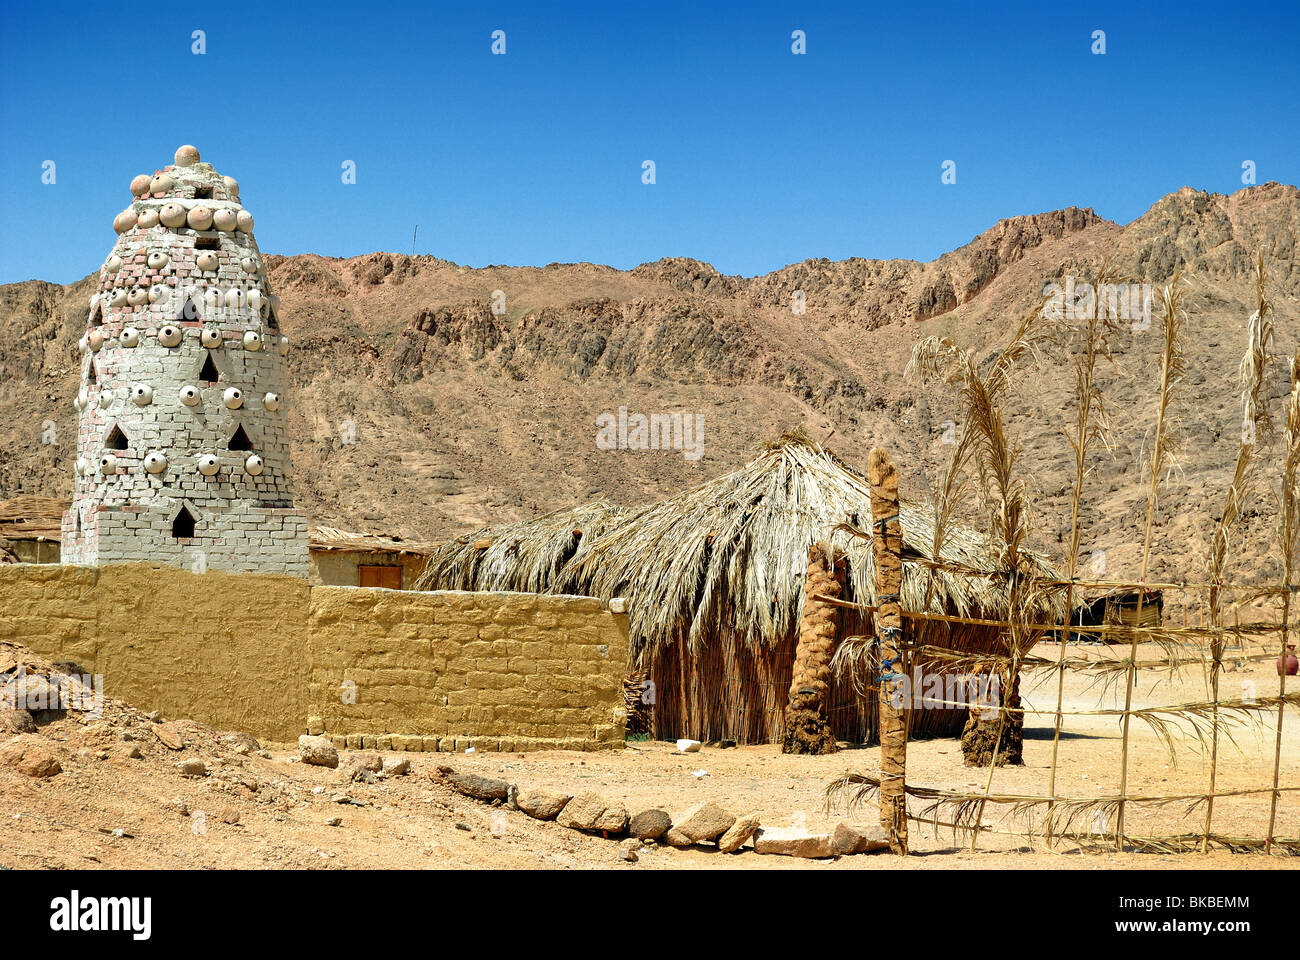 Bedouin village in desert near Hurghada, Egypt Stock Photo